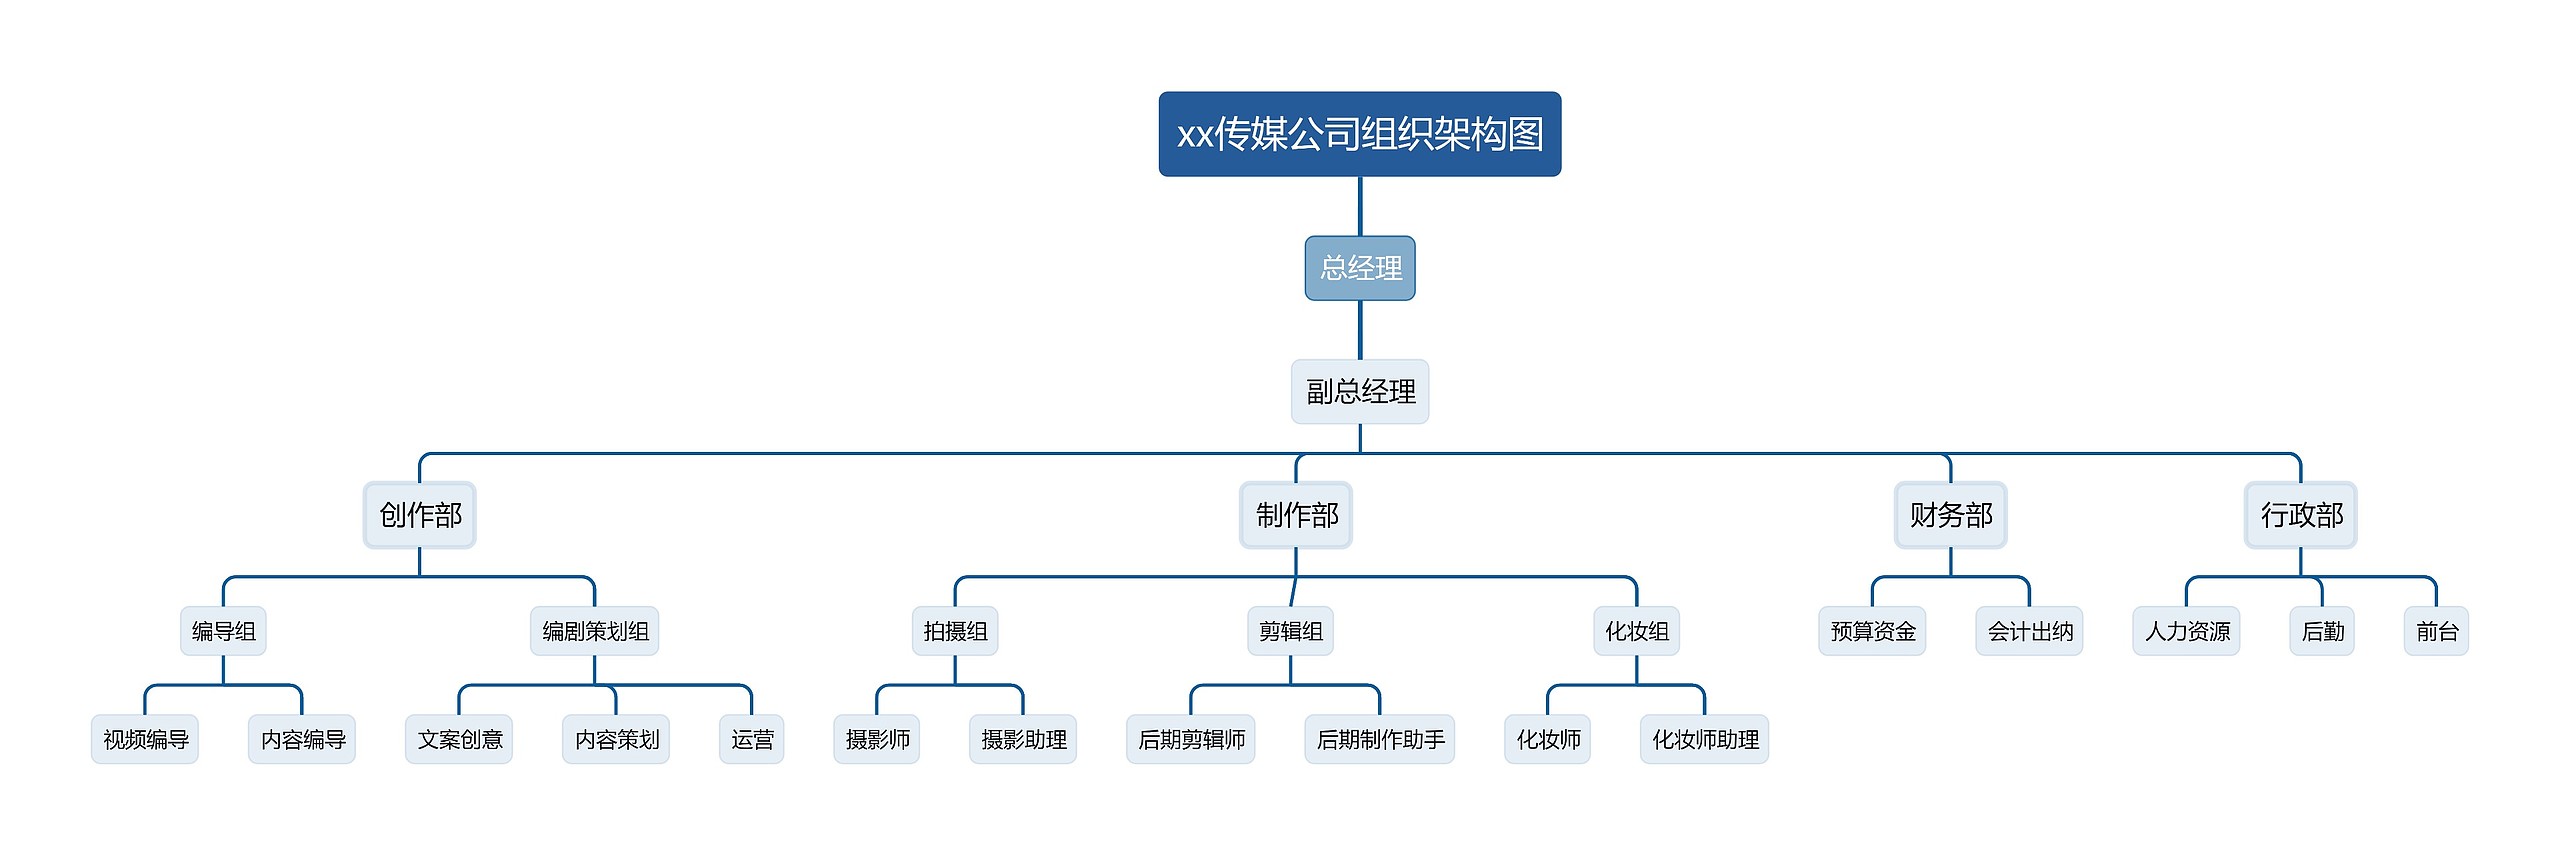 xx传媒公司组织架构图